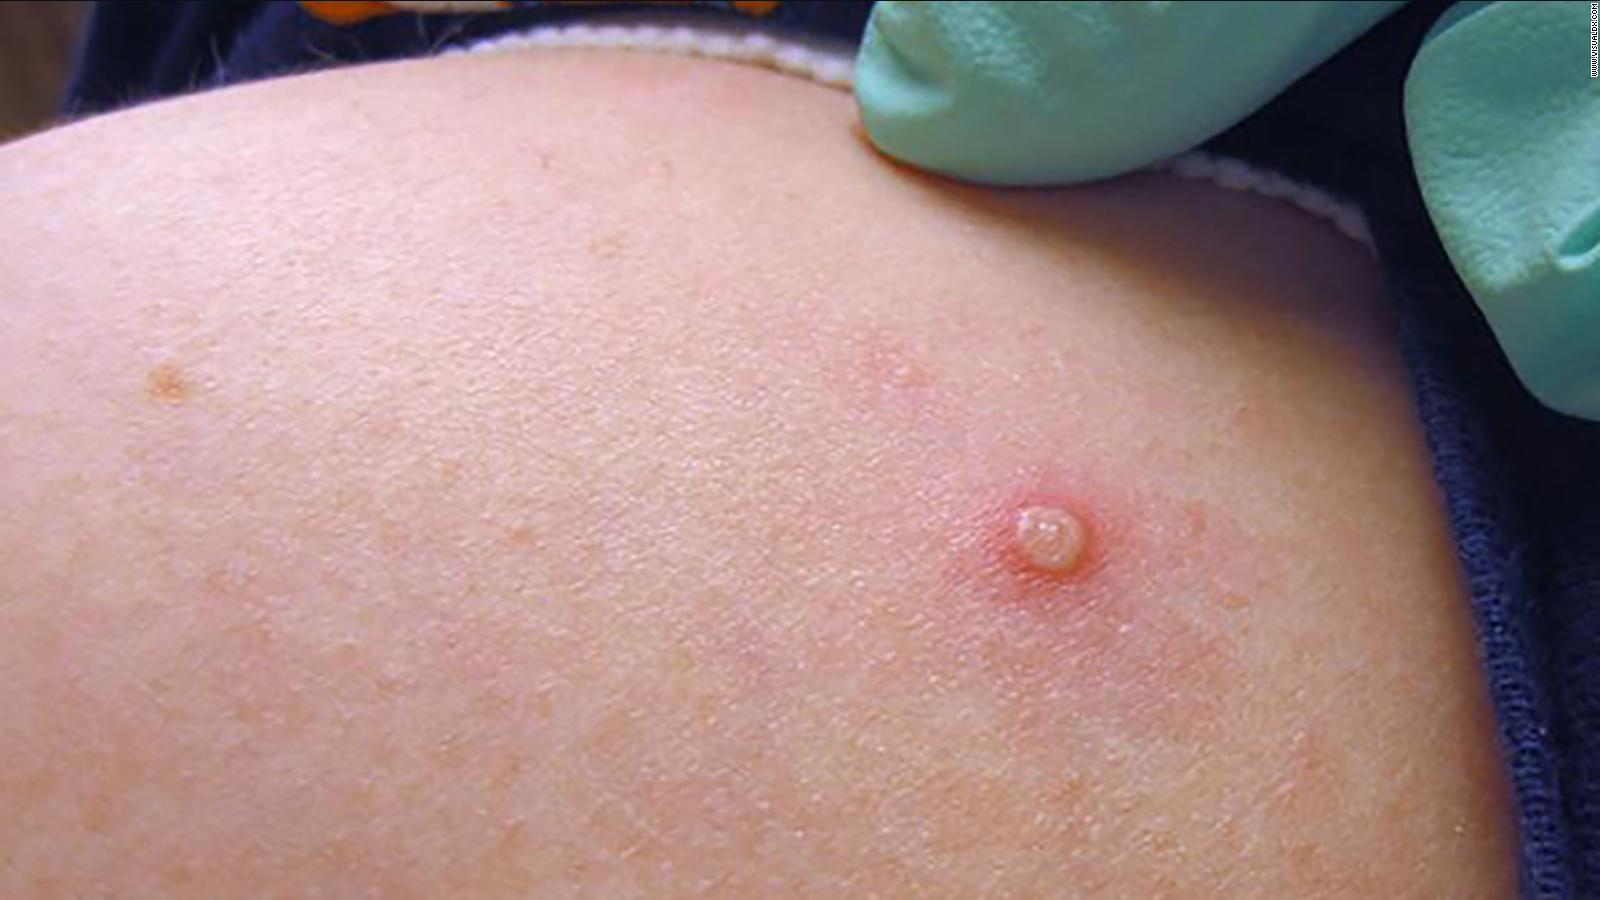 Este tipo de lesiones en la piel son los síntomas más frecuentes de la viruela símica en 2022. Pueden aparecer en zonas genitales, manos, brazos y piernas